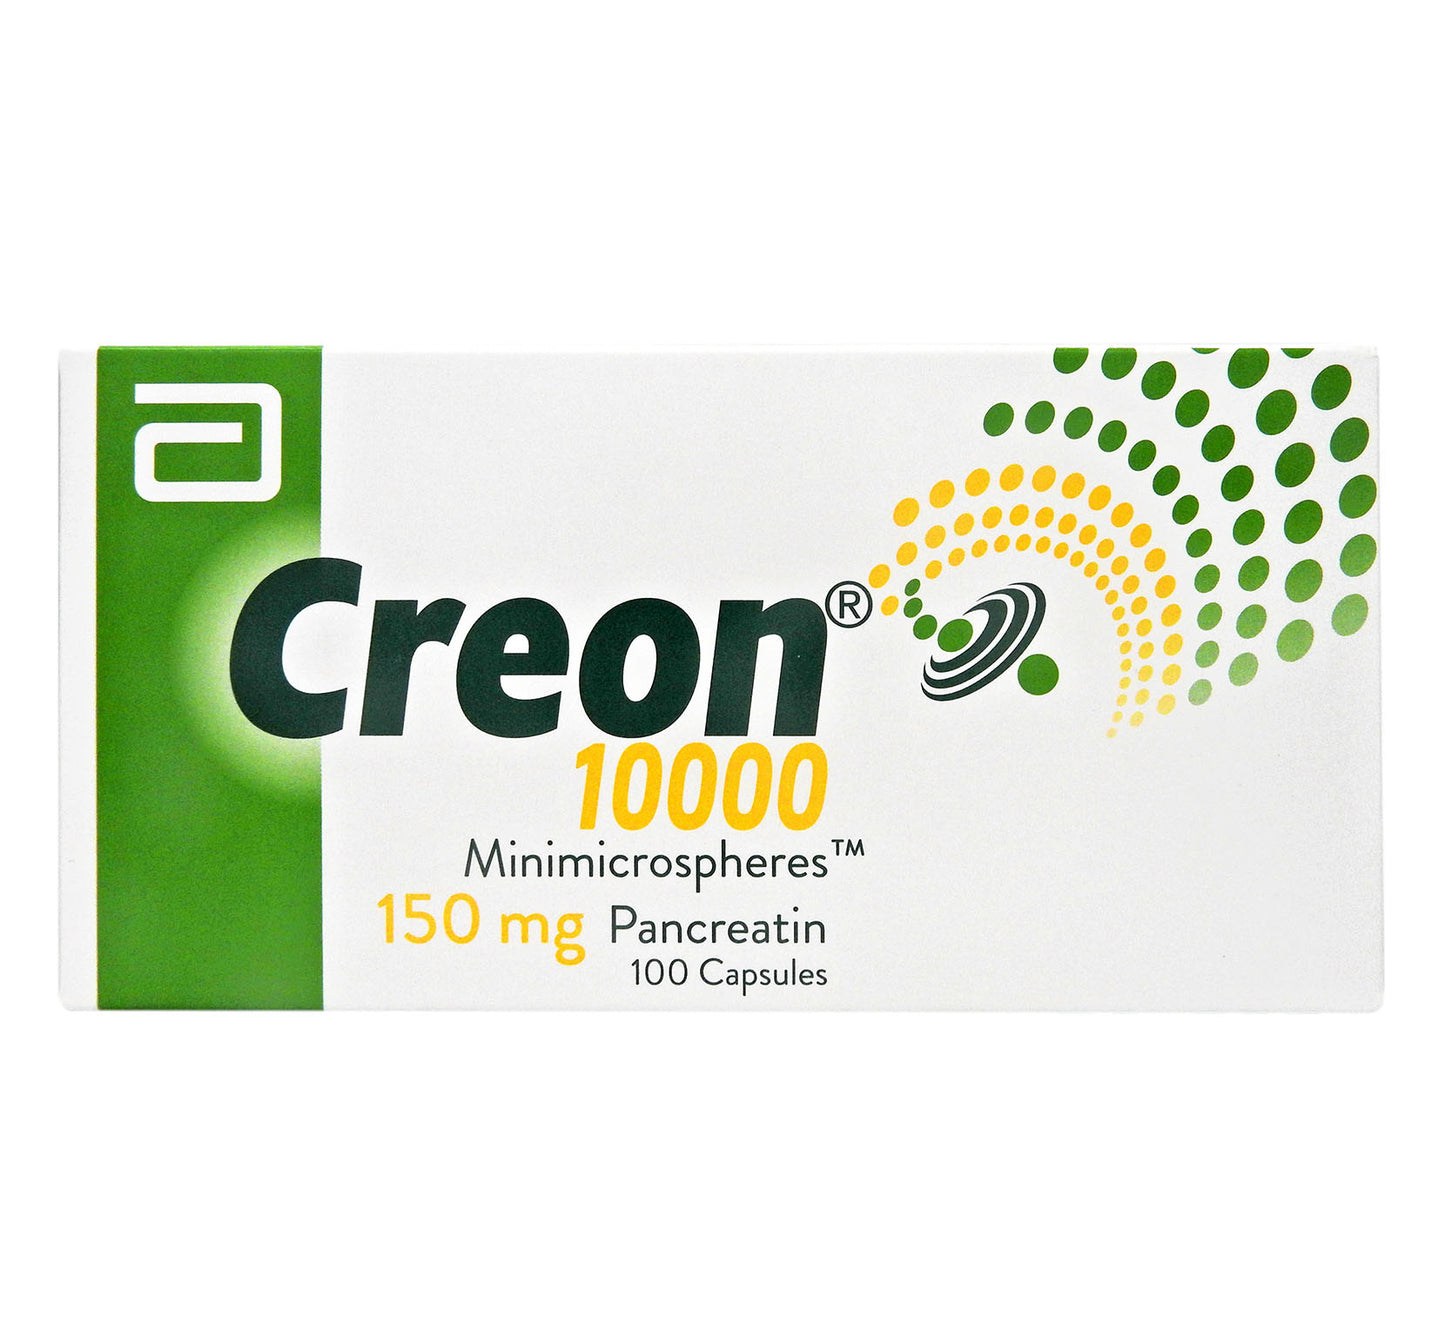 雅培 - Creon 10000 消化酵素 #1004990